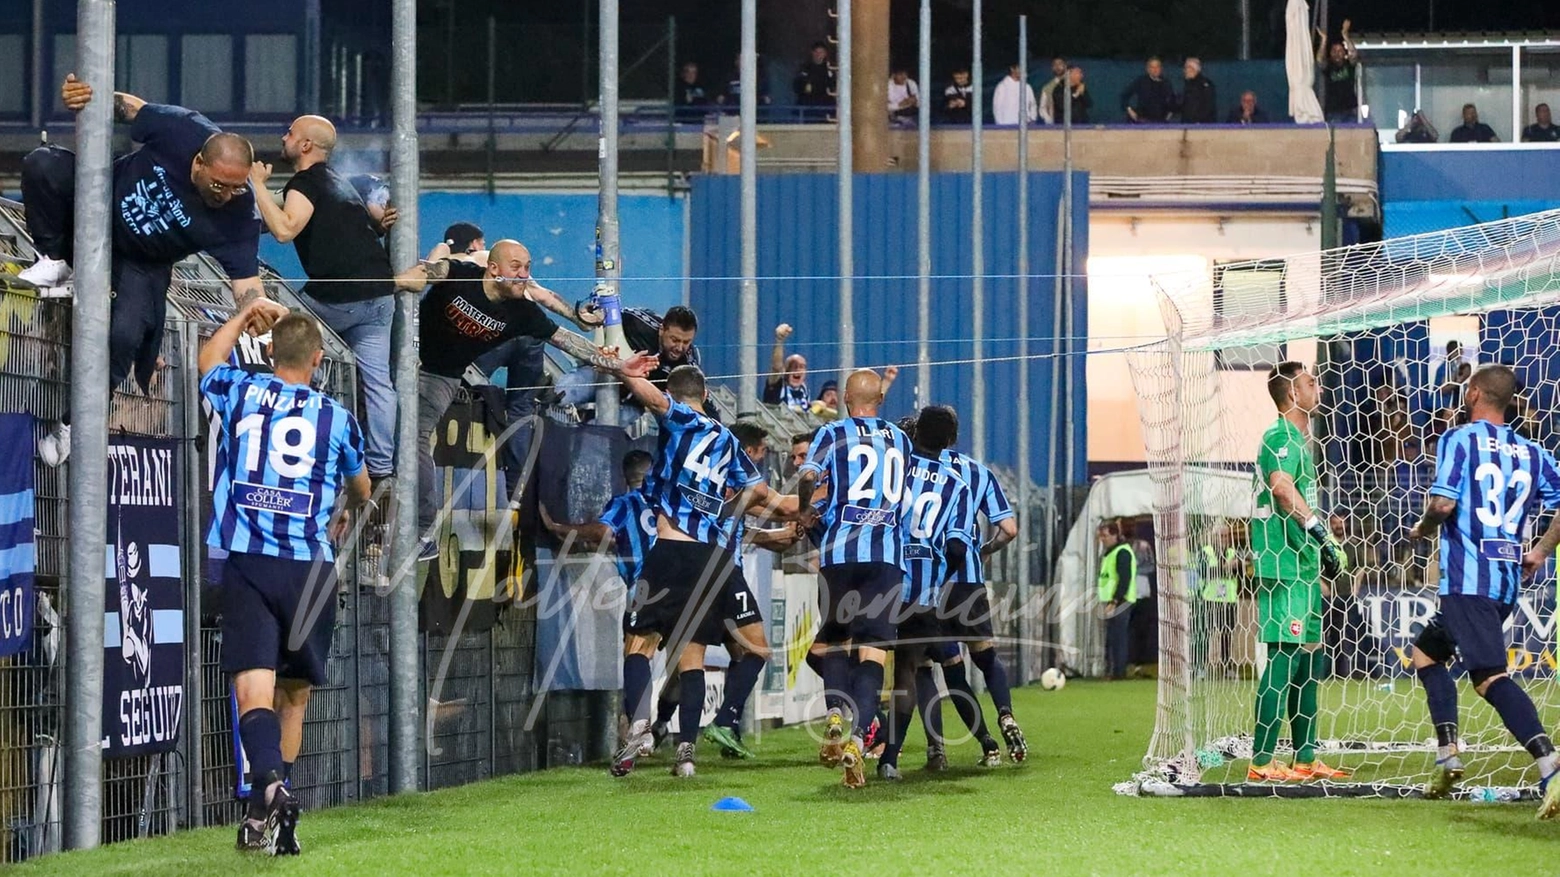 La squadra festeggia sotto la Nord dopo l'1-1 di Battistini nella gara contro l'Ancona